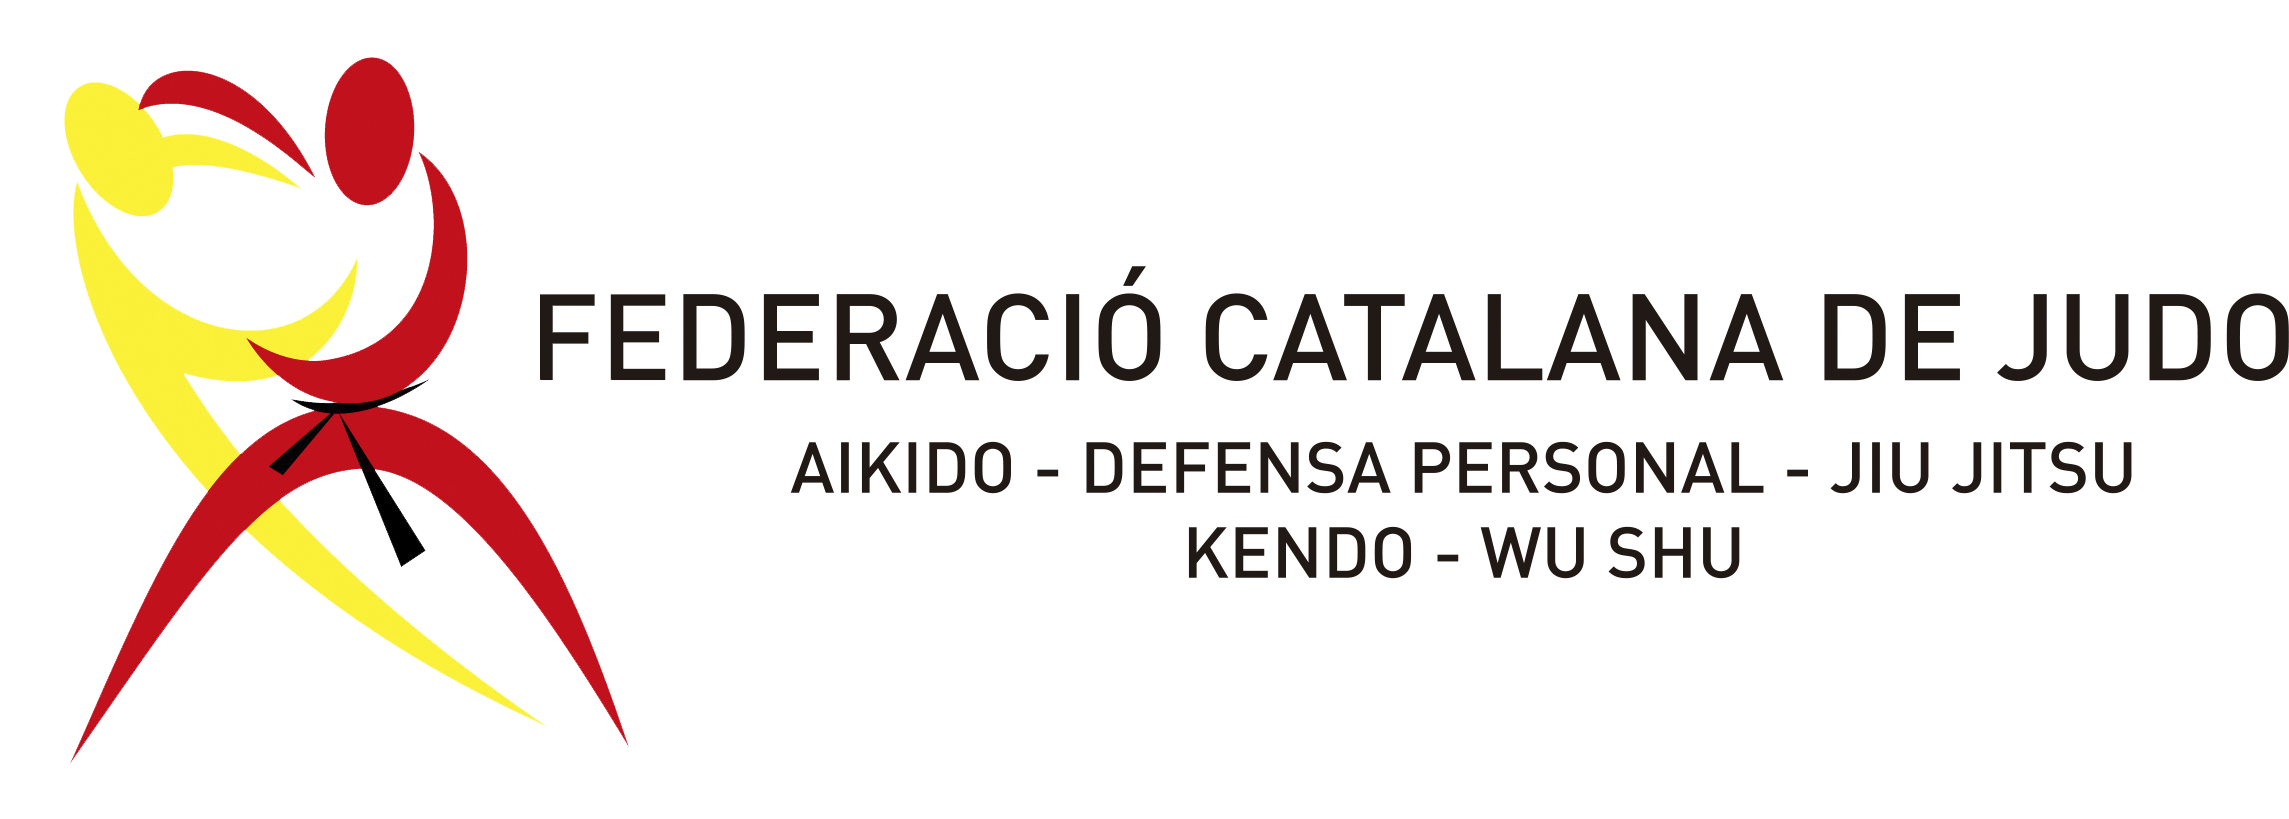 Federació Catalana de Judo